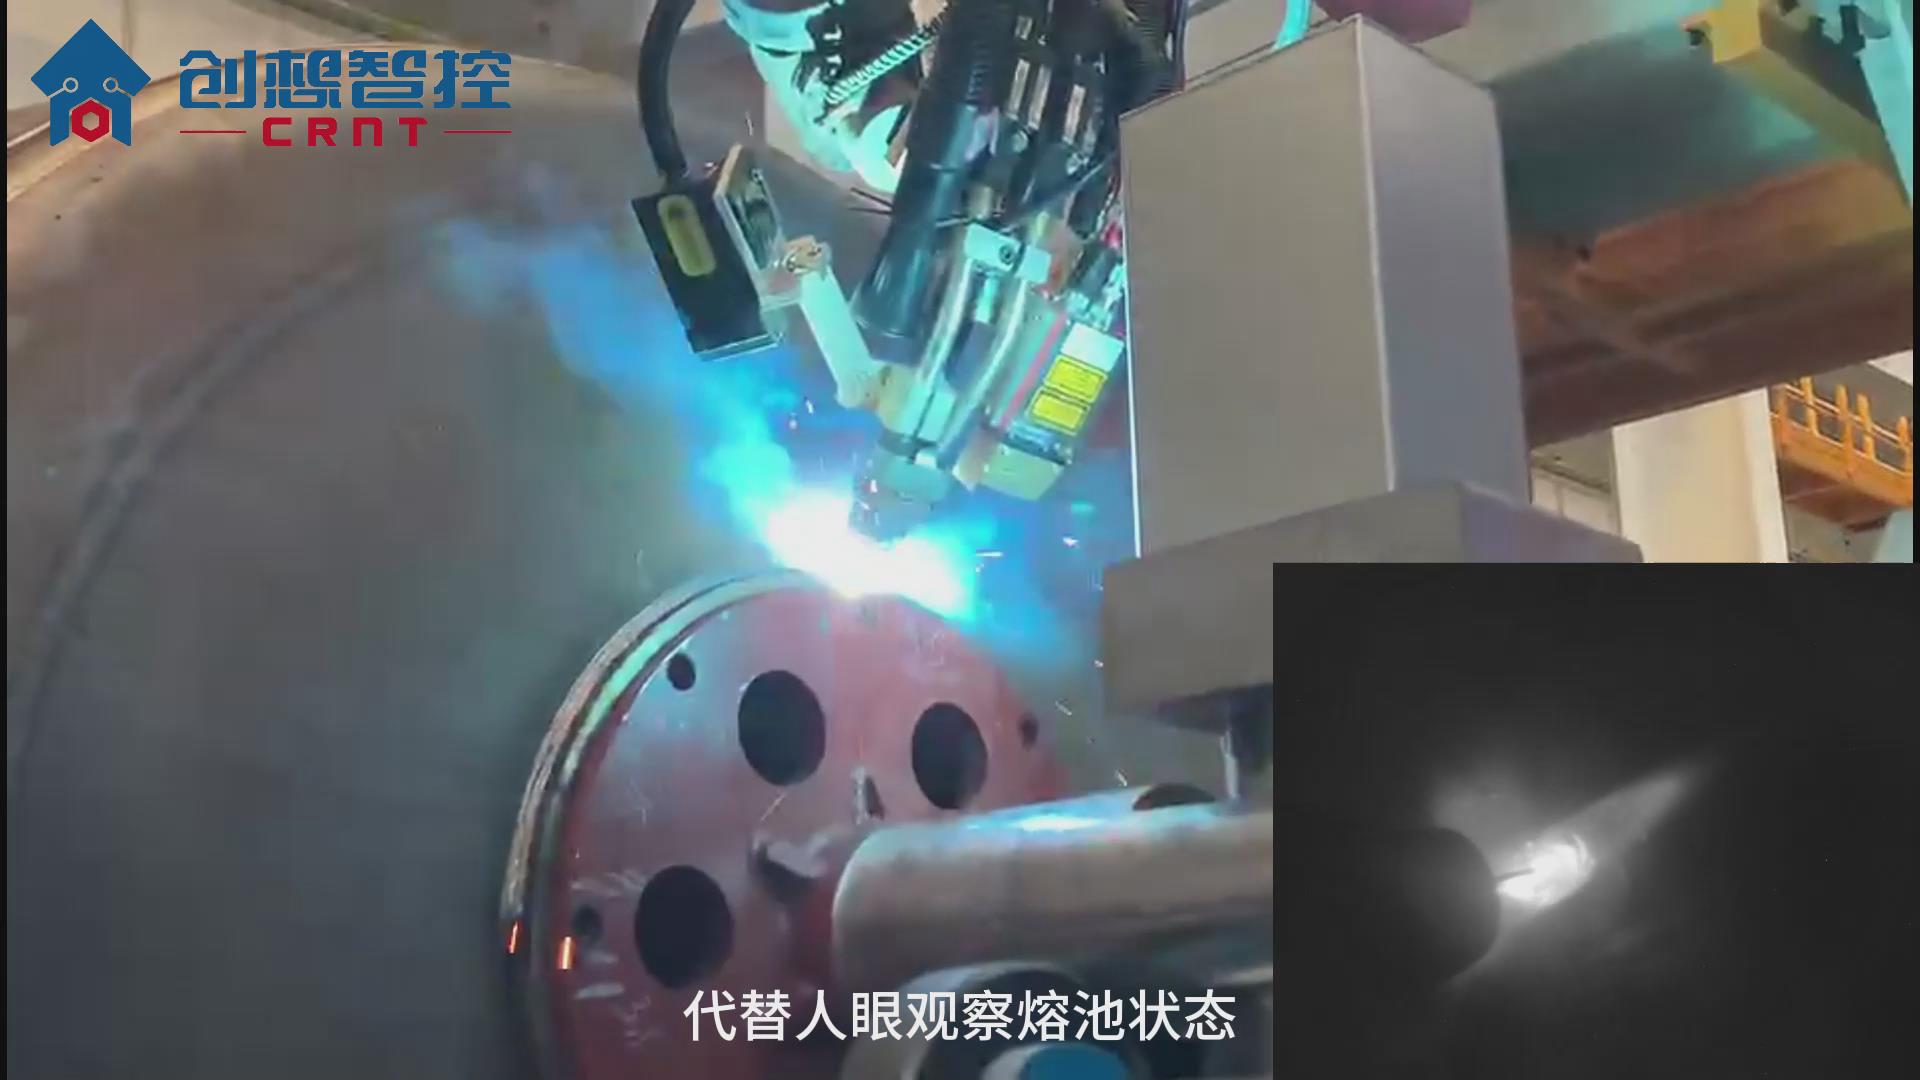 创想熔池监控相机在工程机械行业的应用案例